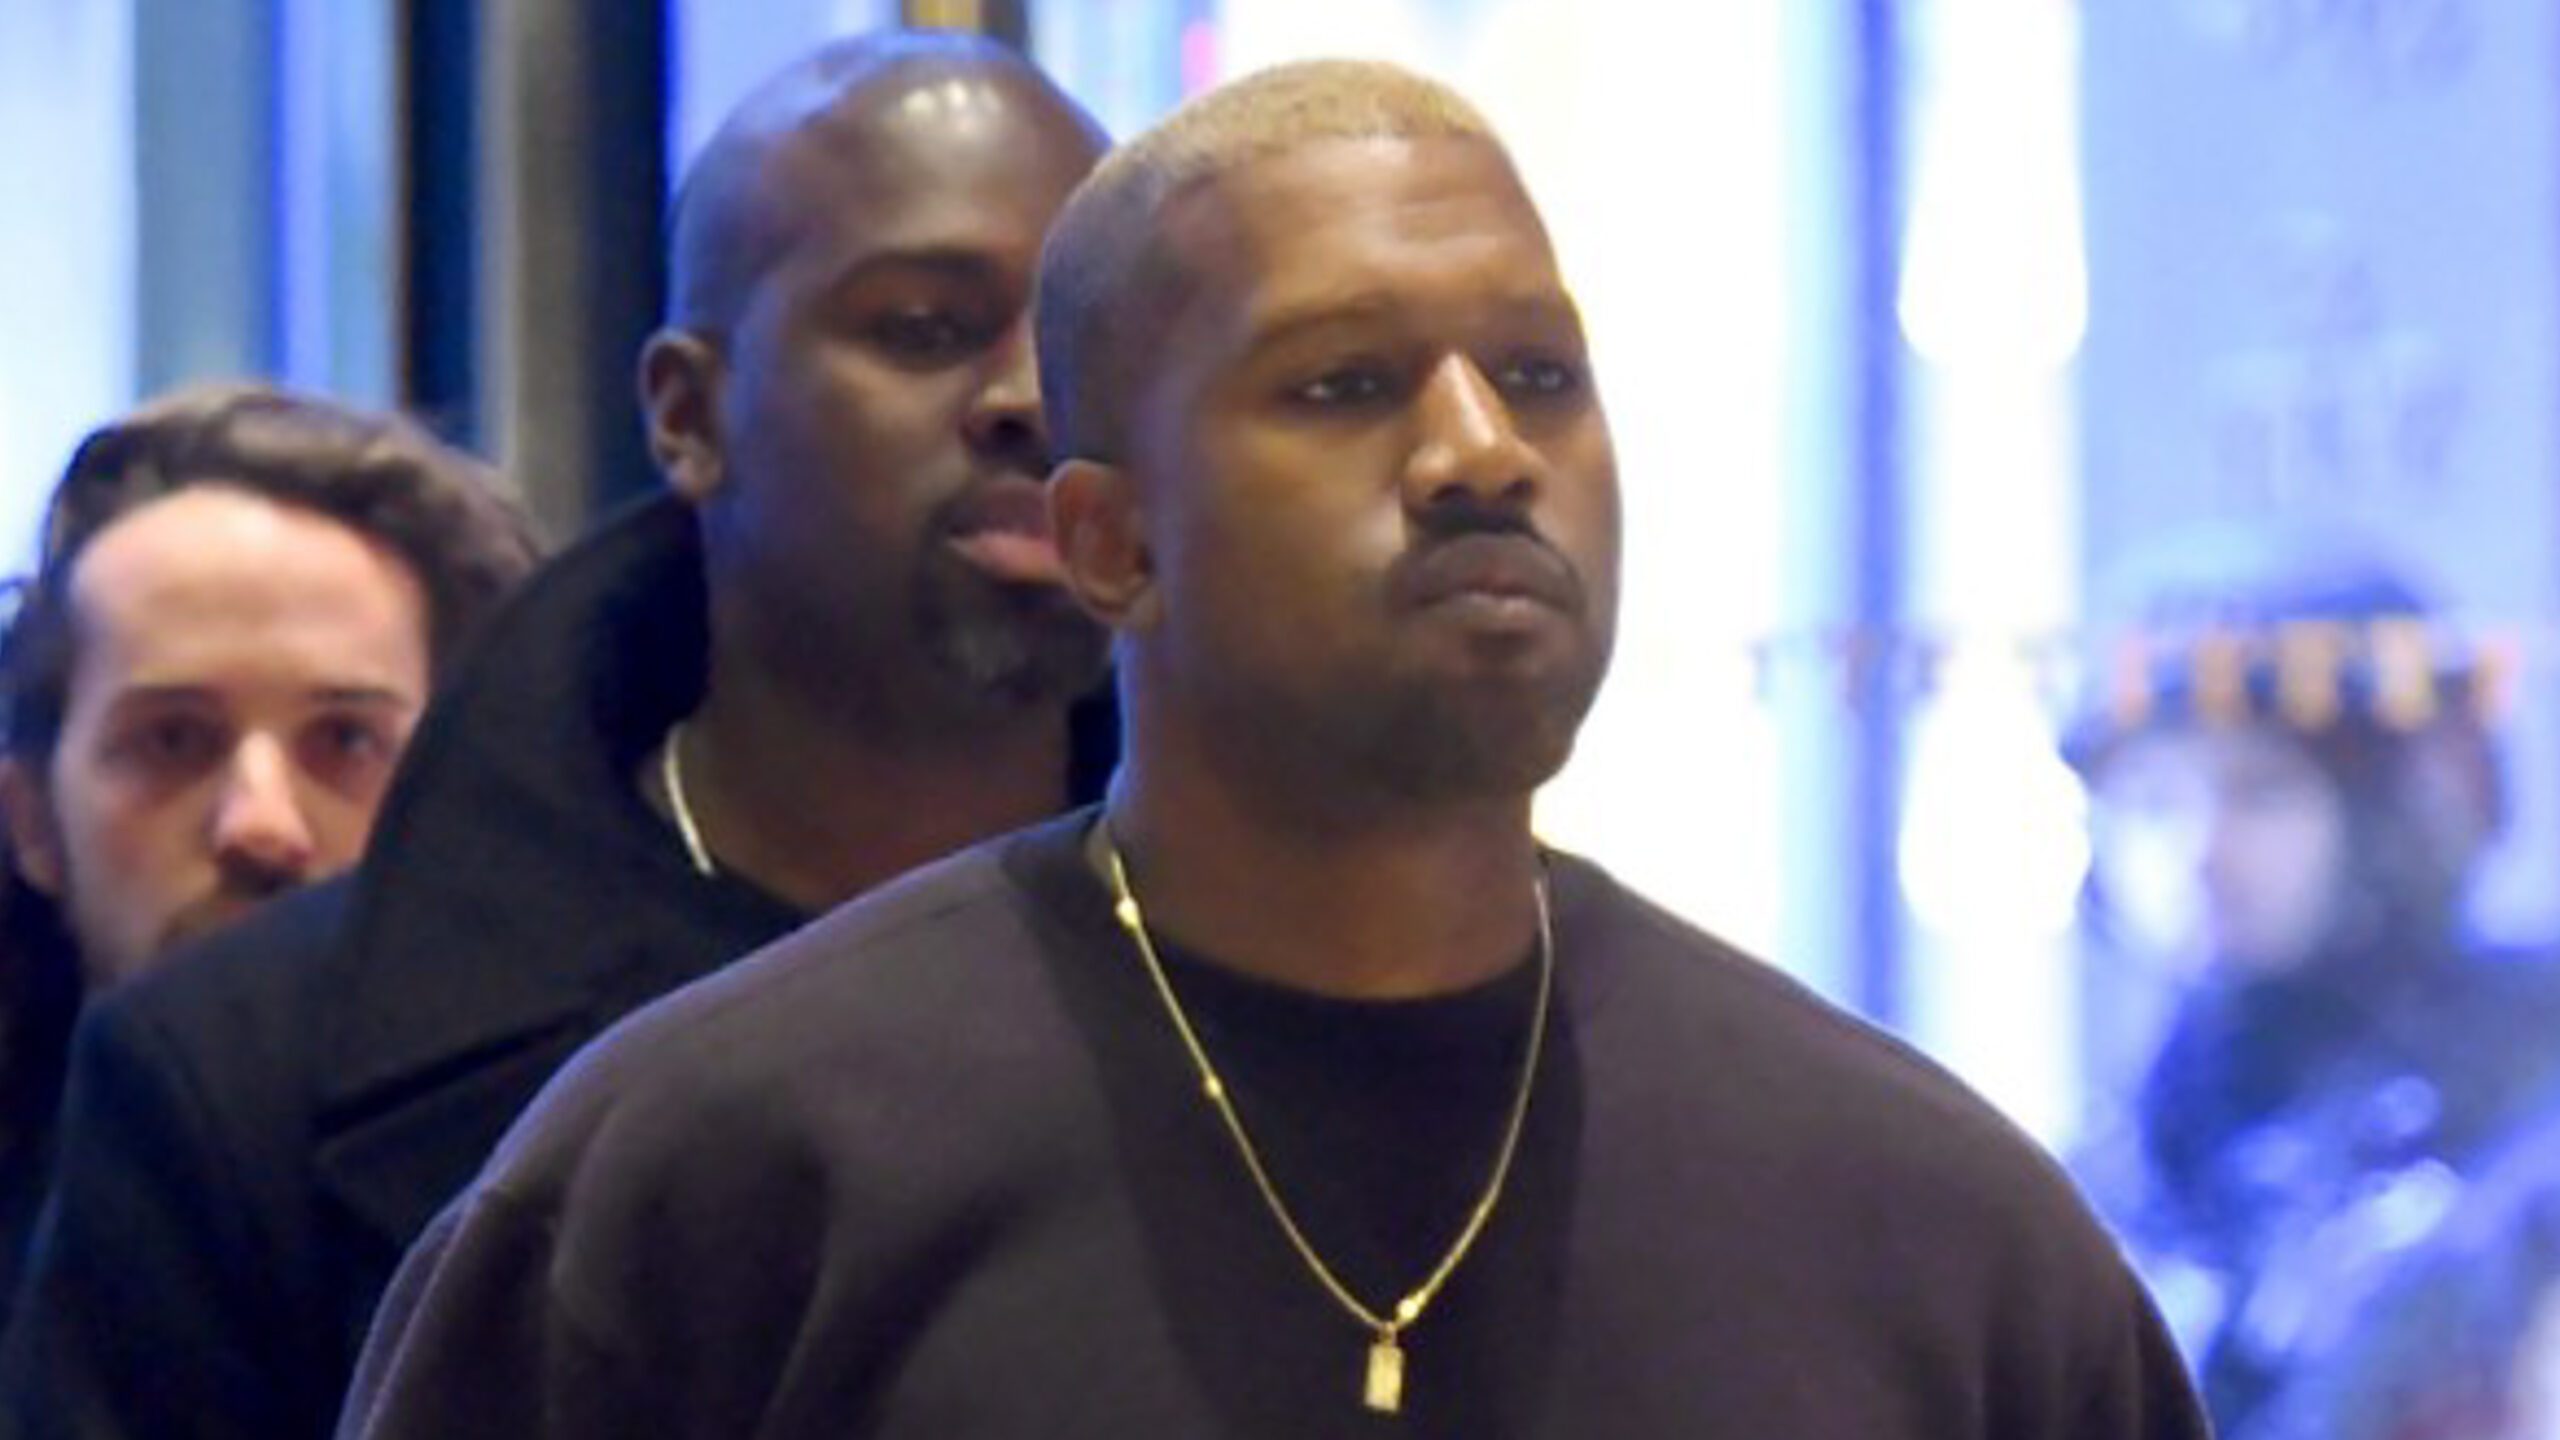 Kanye West exits social media